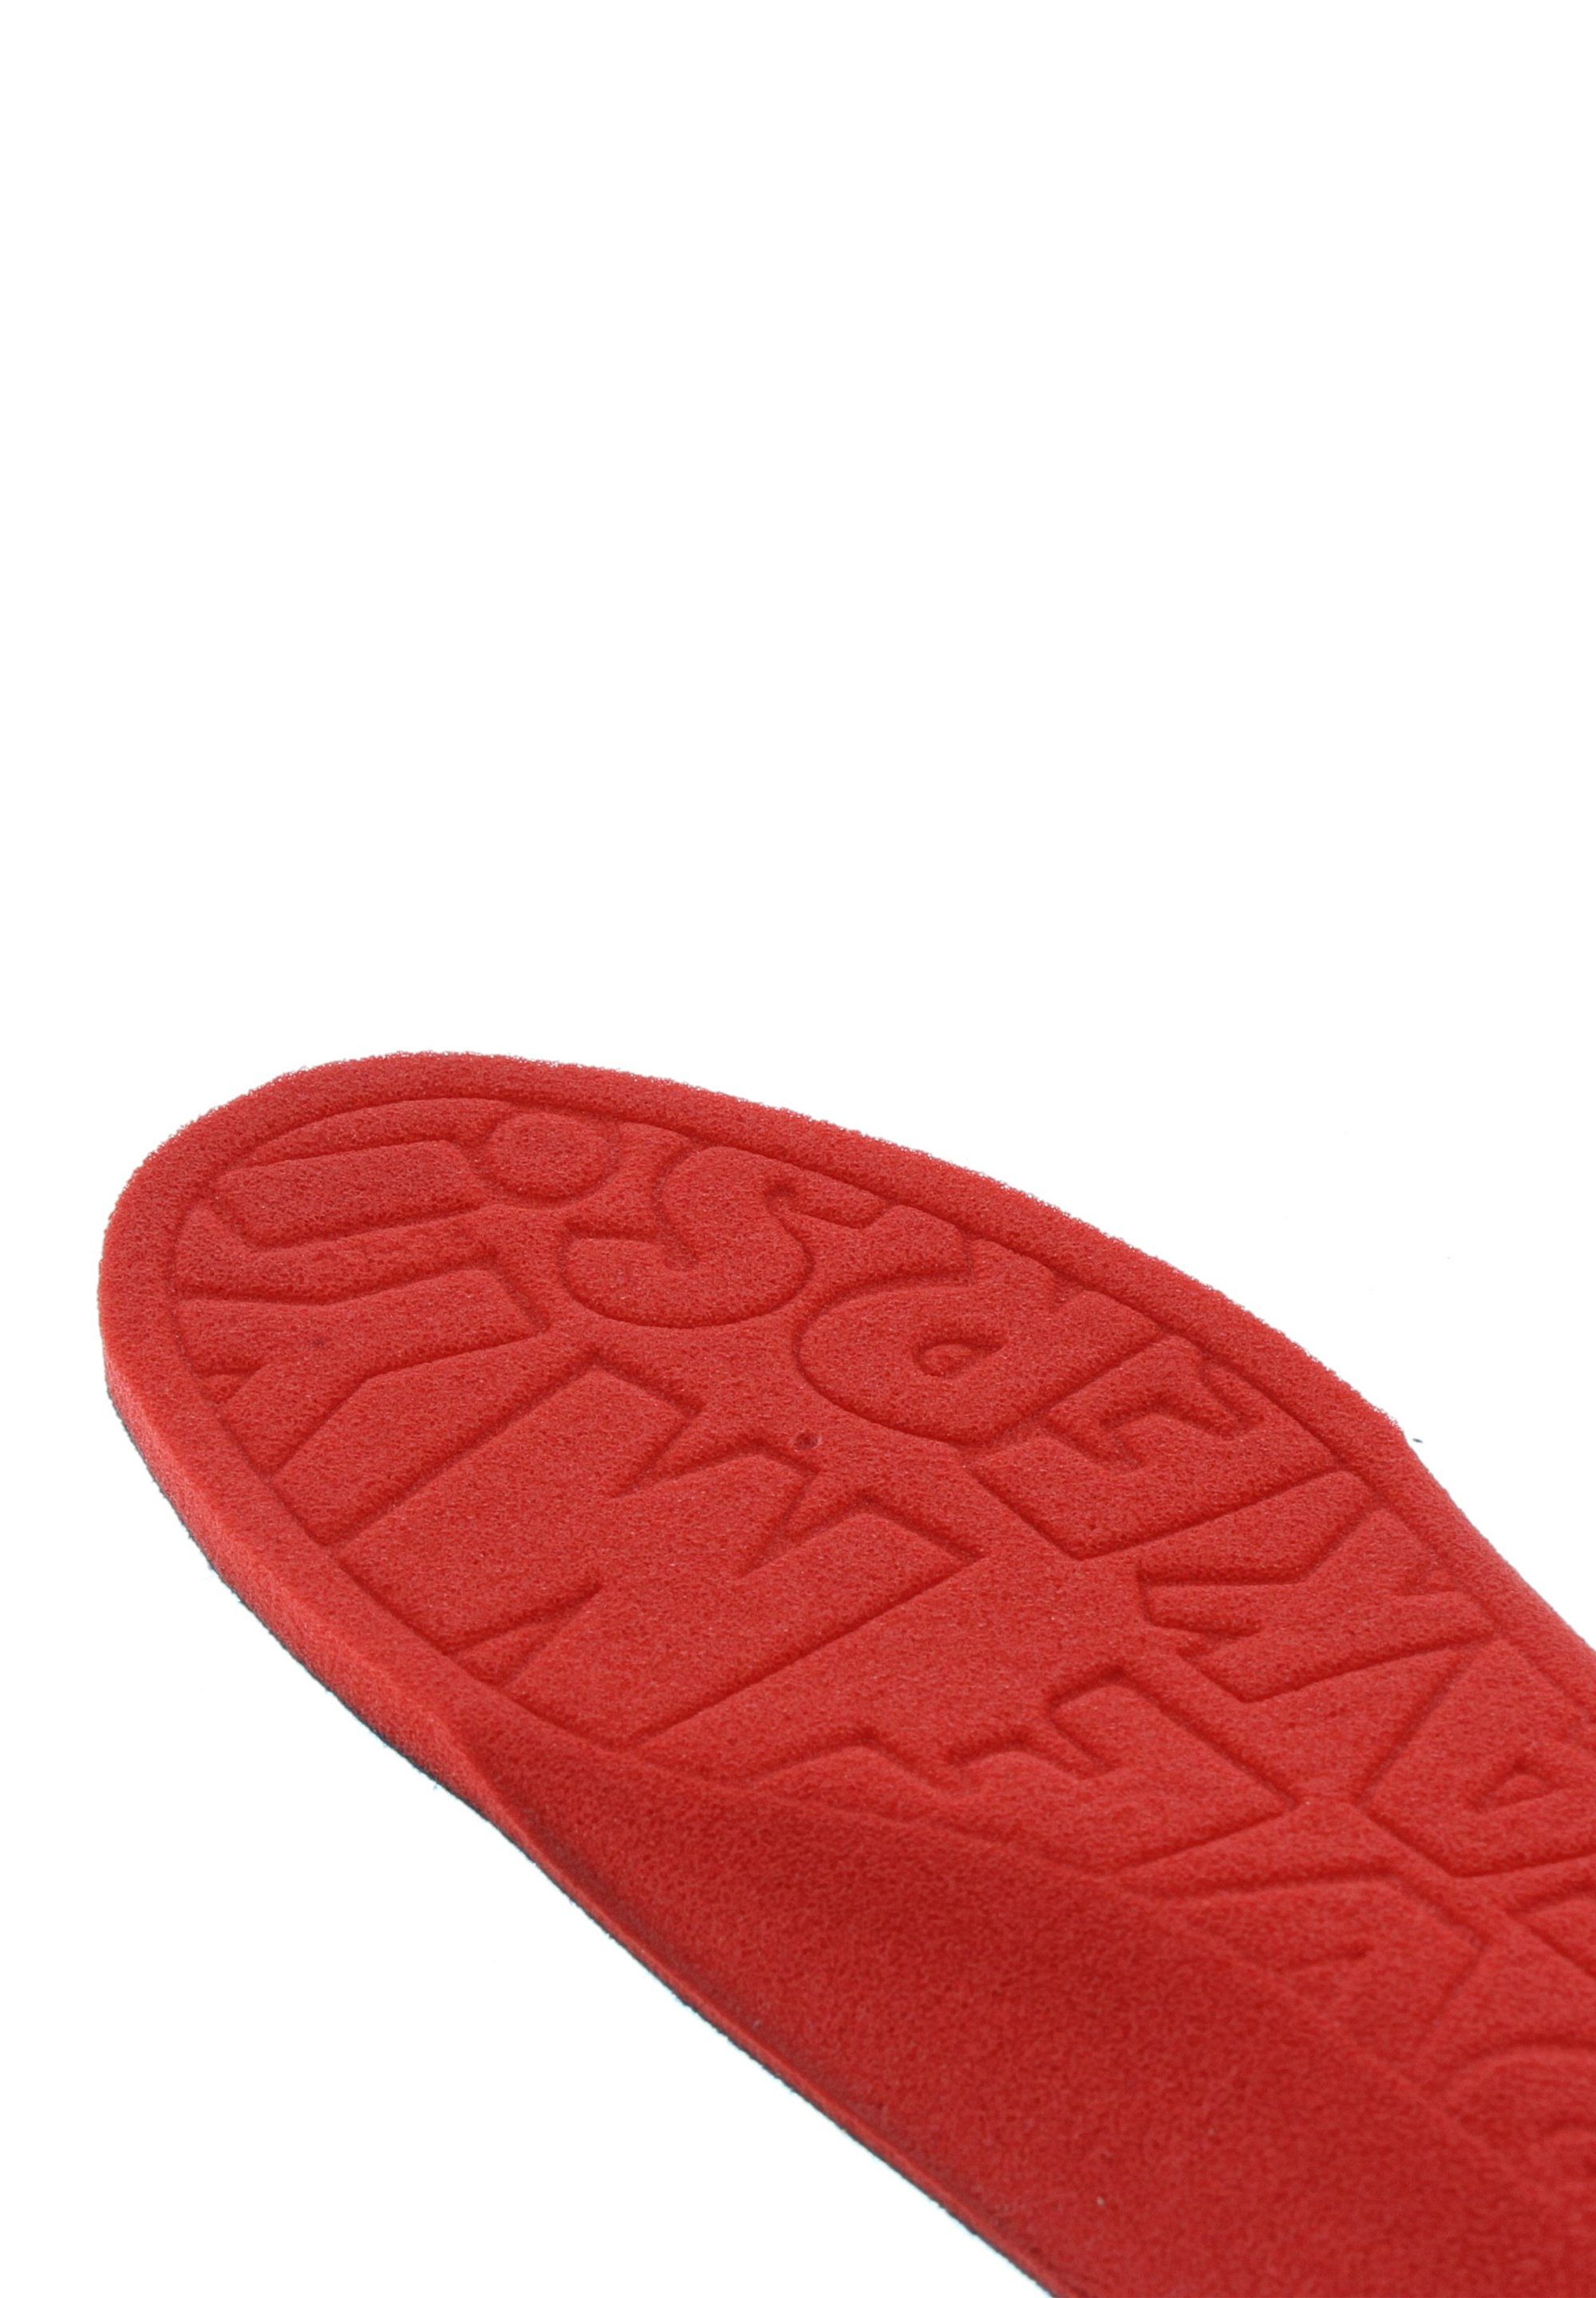 Sneaker BAMA Group Einlegesohlen BAMA Fußbett